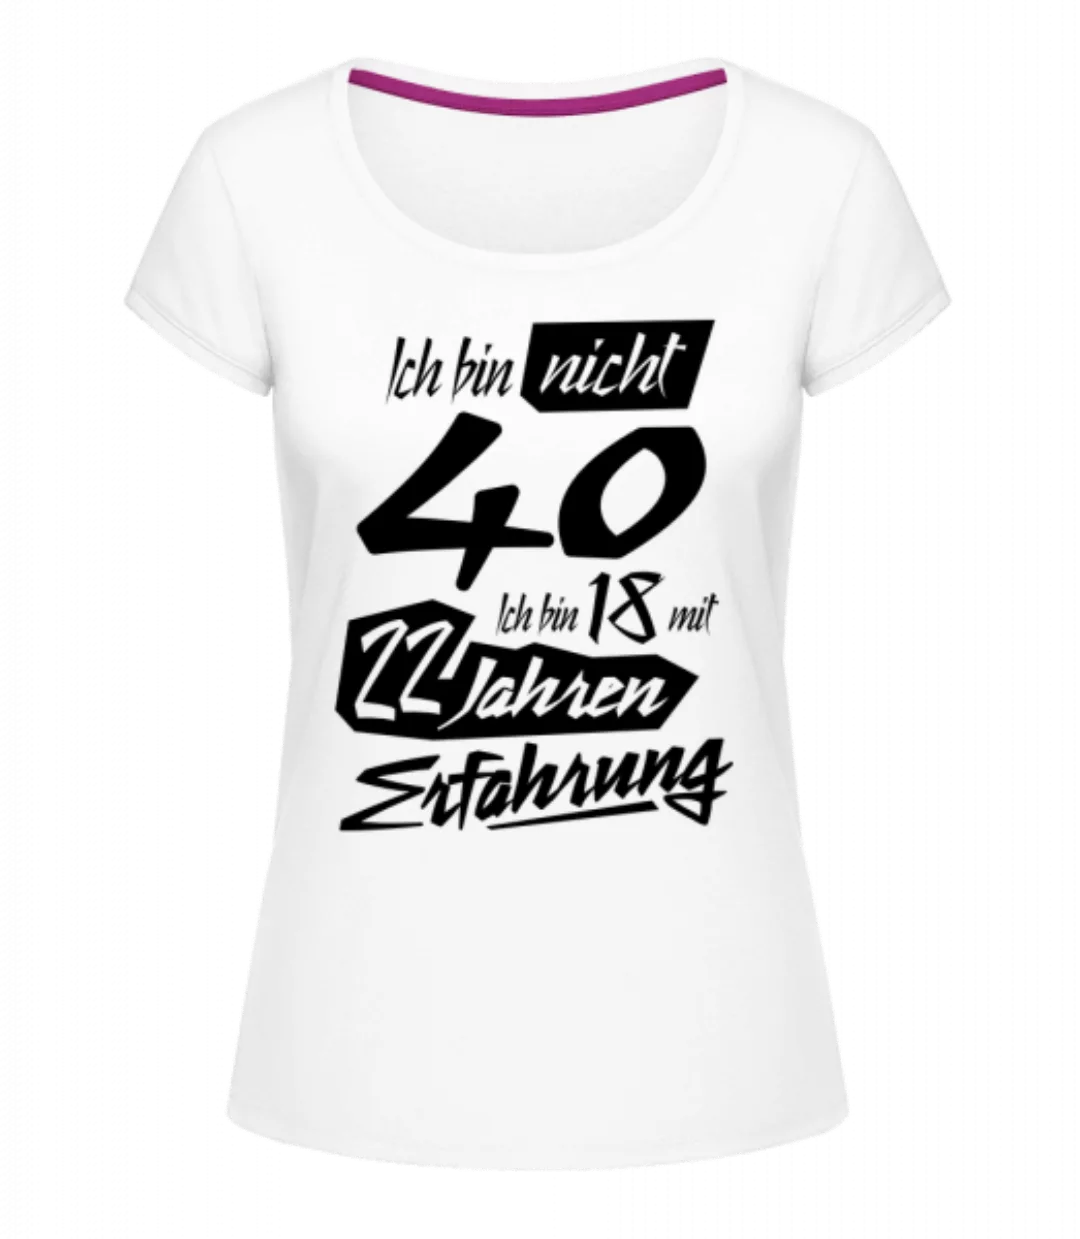 18 Mit 22 Jahren Erfahrung · Frauen T-Shirt U-Ausschnitt günstig online kaufen